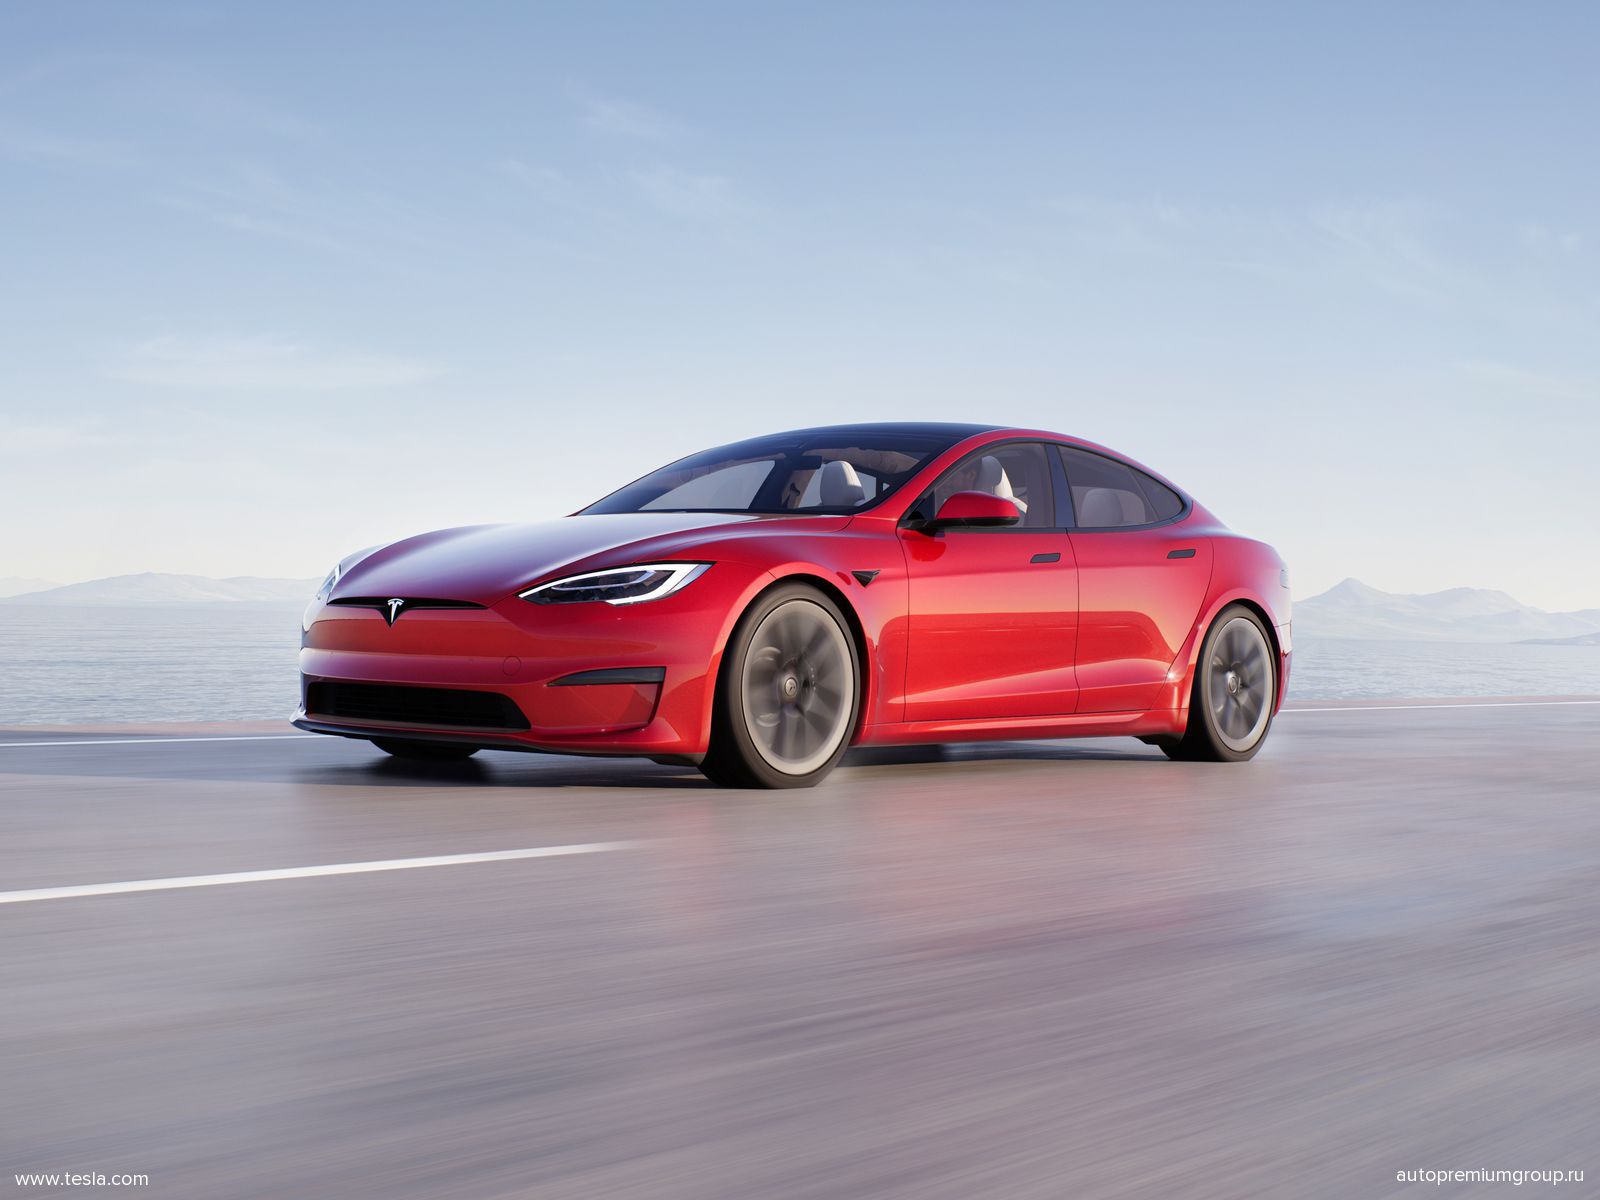 Tesla - на сегодняшний день безусловный лидер отрасли электромобилей (foto: tesla)